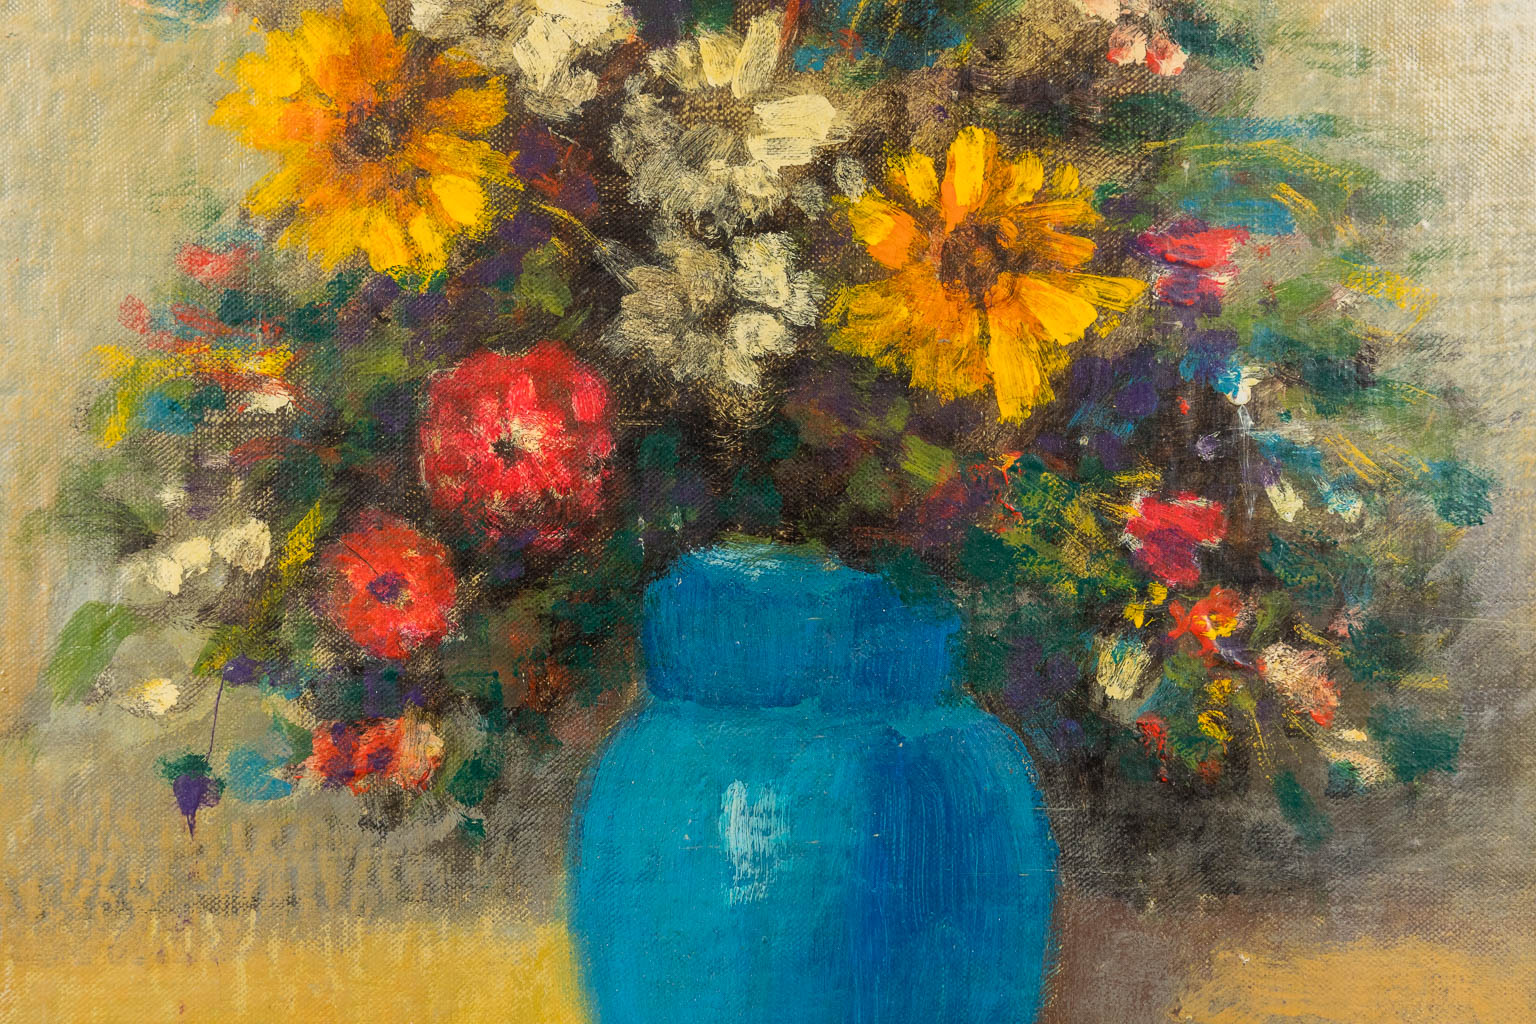 Maurice SCHELCK (1906-1987) 'Flower Vase', oil on canvas. 